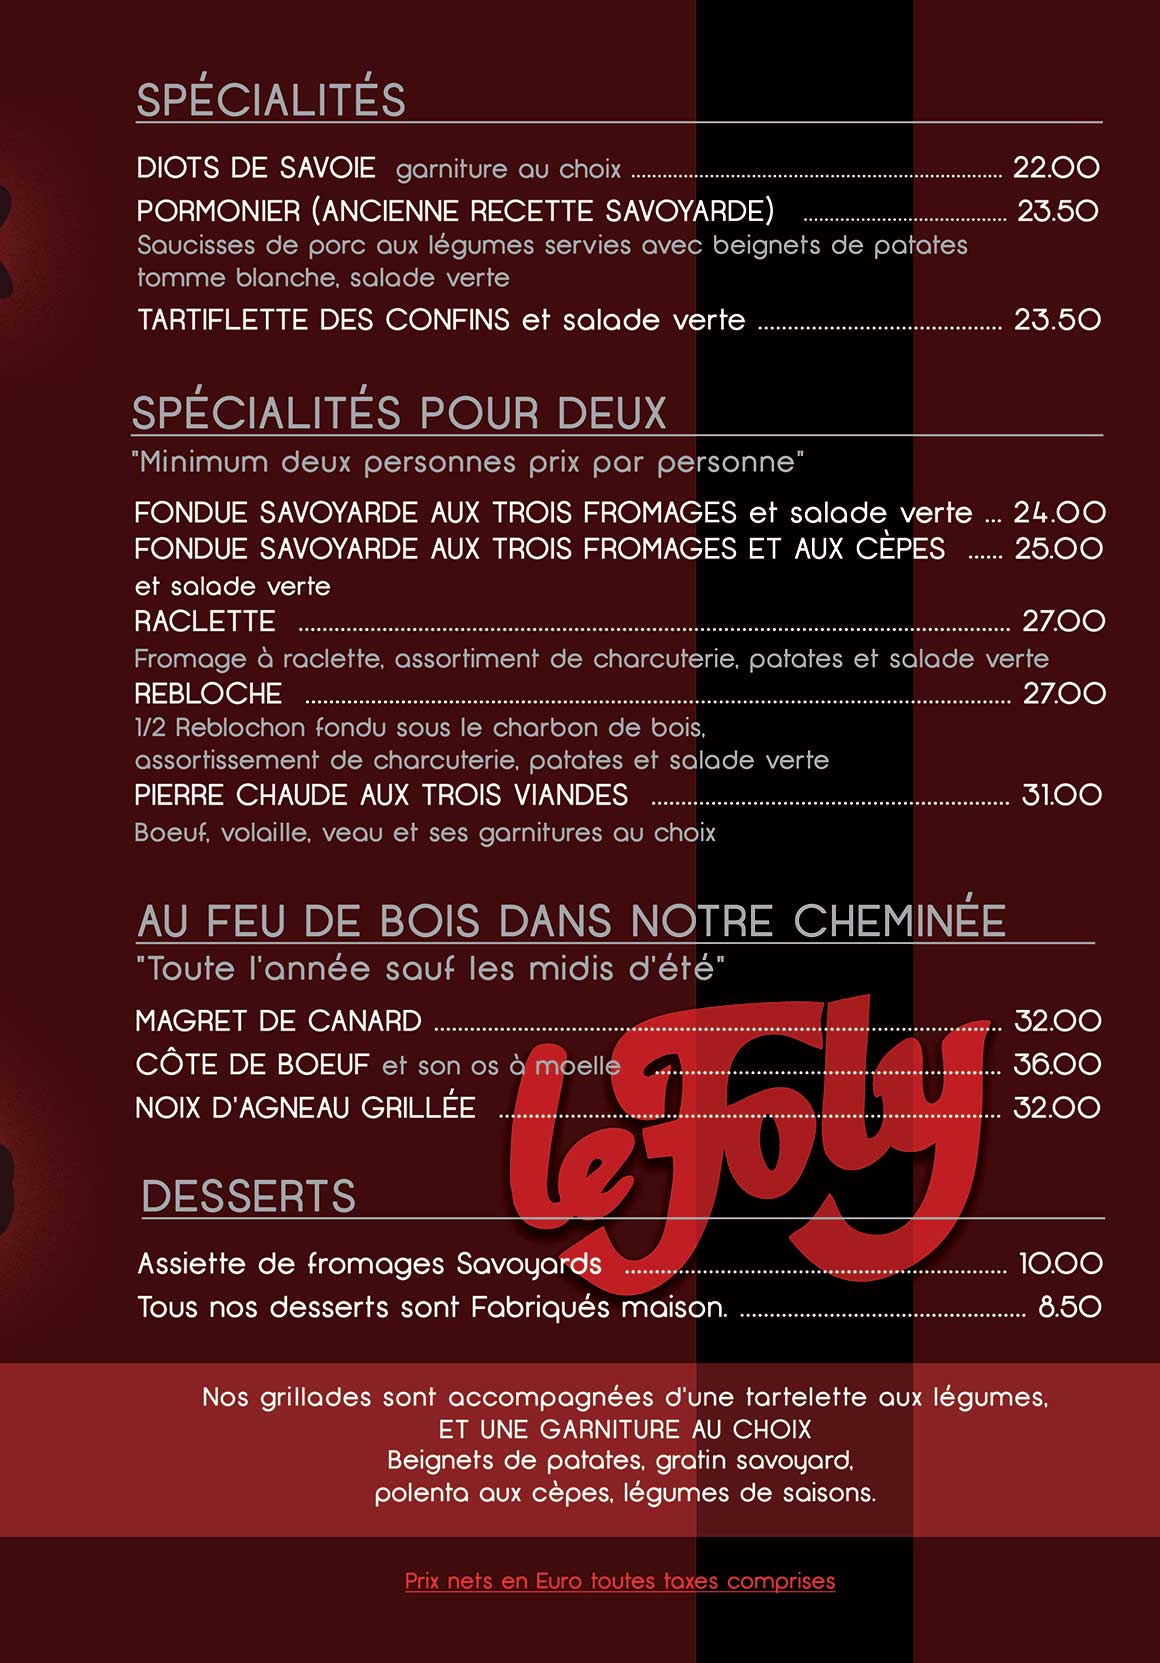 Spécialités savoyardes restaurant le Foly La Clusaz fondue, raclette, reblochonnade, tartiflette, viande grillée au feu de bois dans cheminée